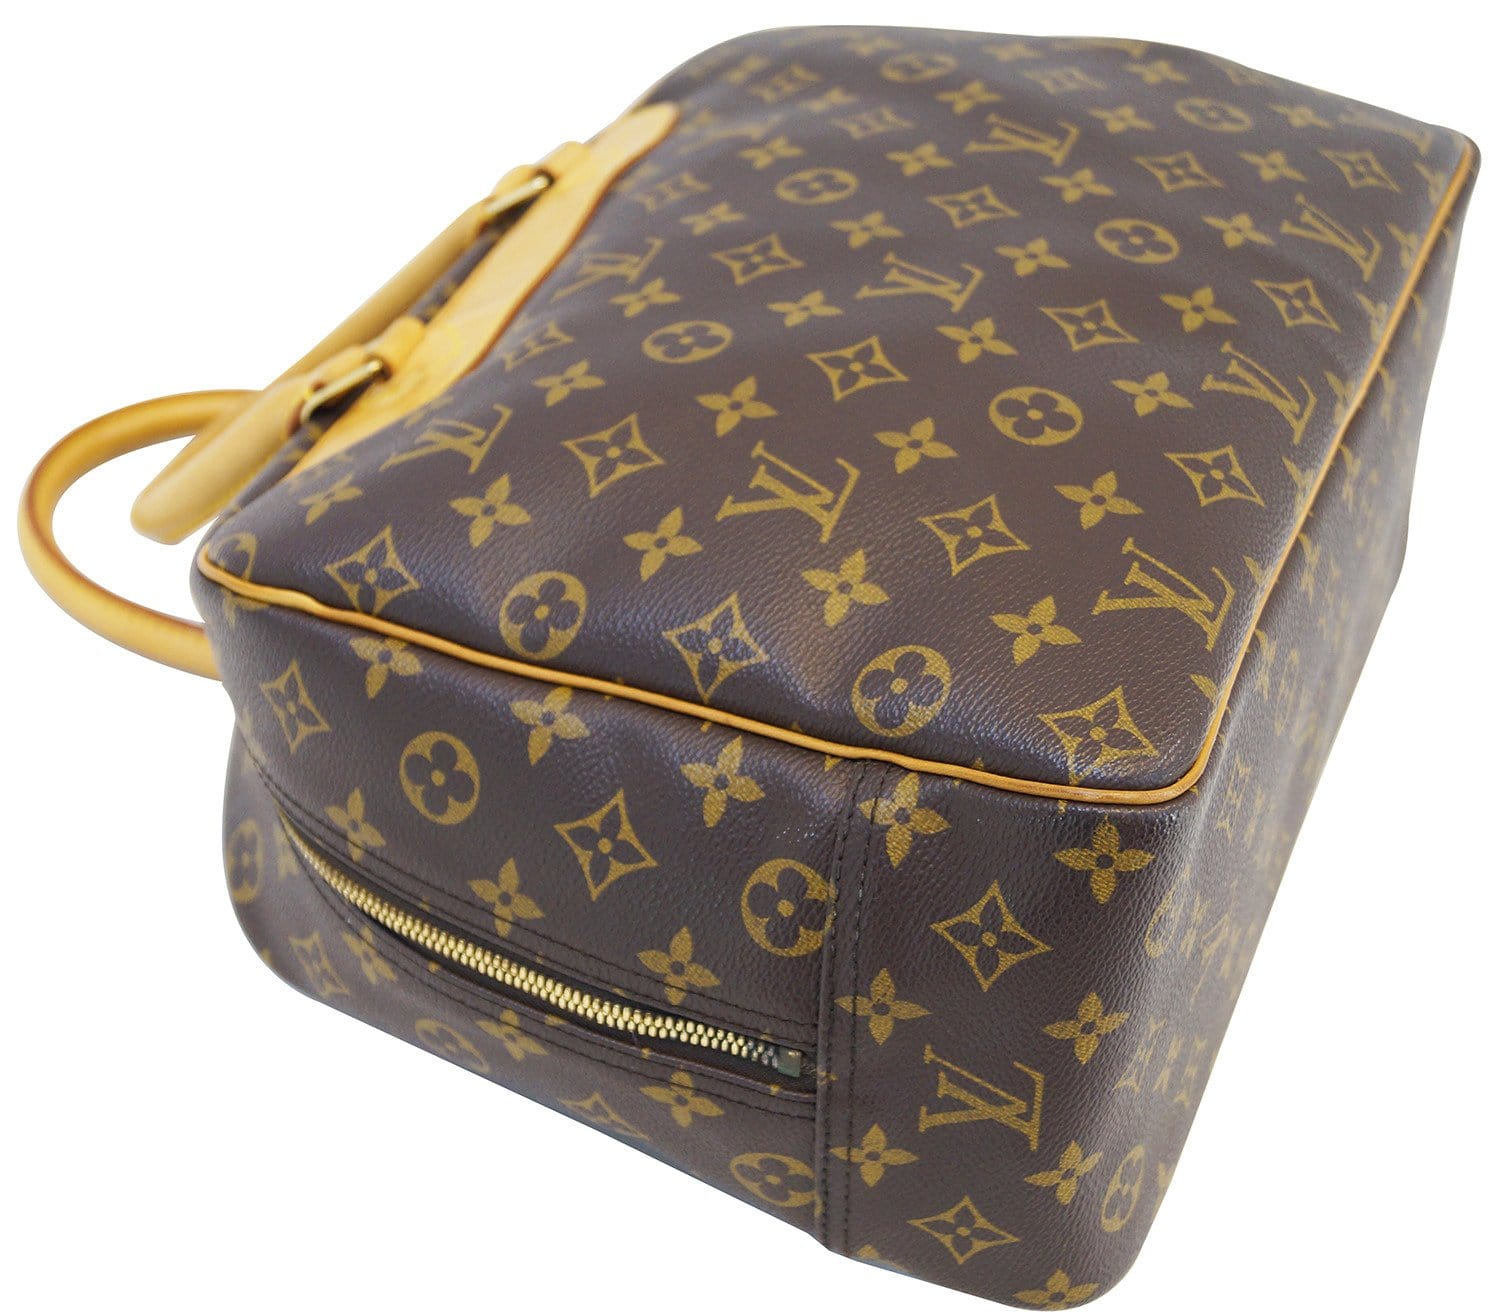 Auth Louis Vuitton Monogram Deauville M47270 Women's Handbag